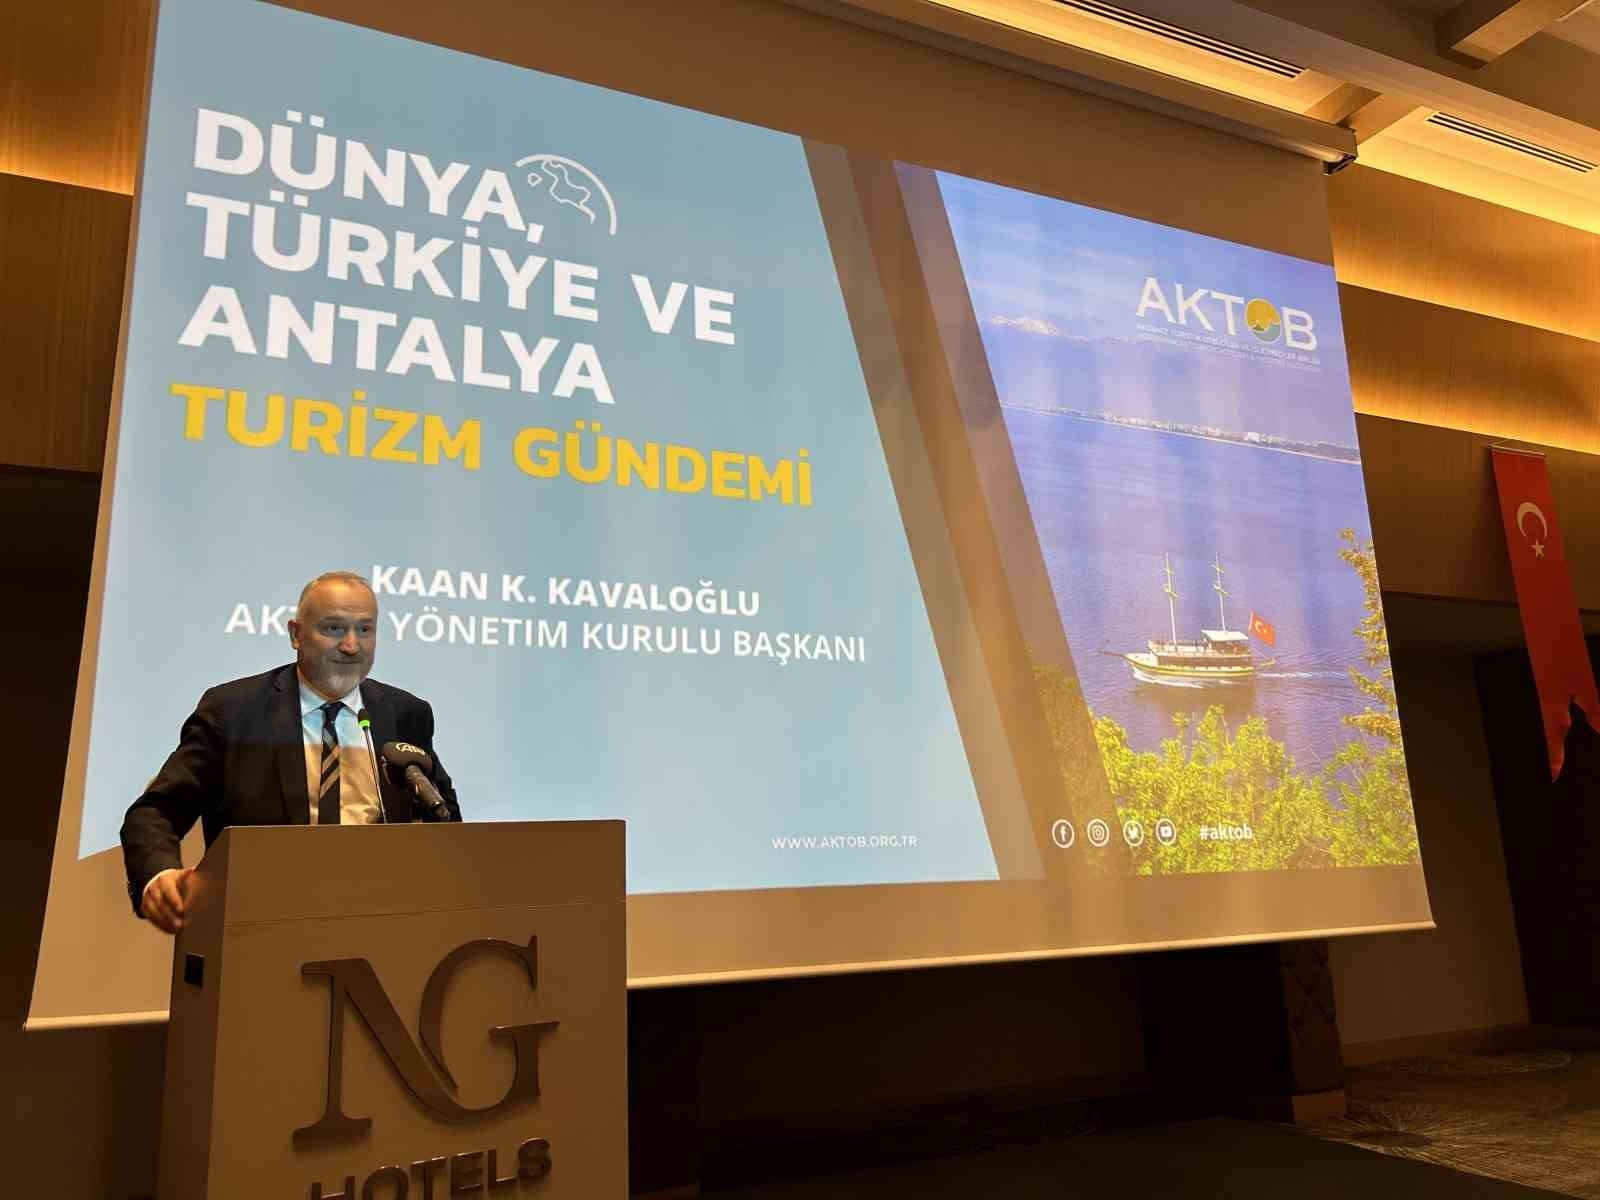 2023/08/kavaloglu-turkiye-en-iyi-medikal-turizm-destinasyonlari-arasinda-gosteriliyor-20230818AW01-1.jpg